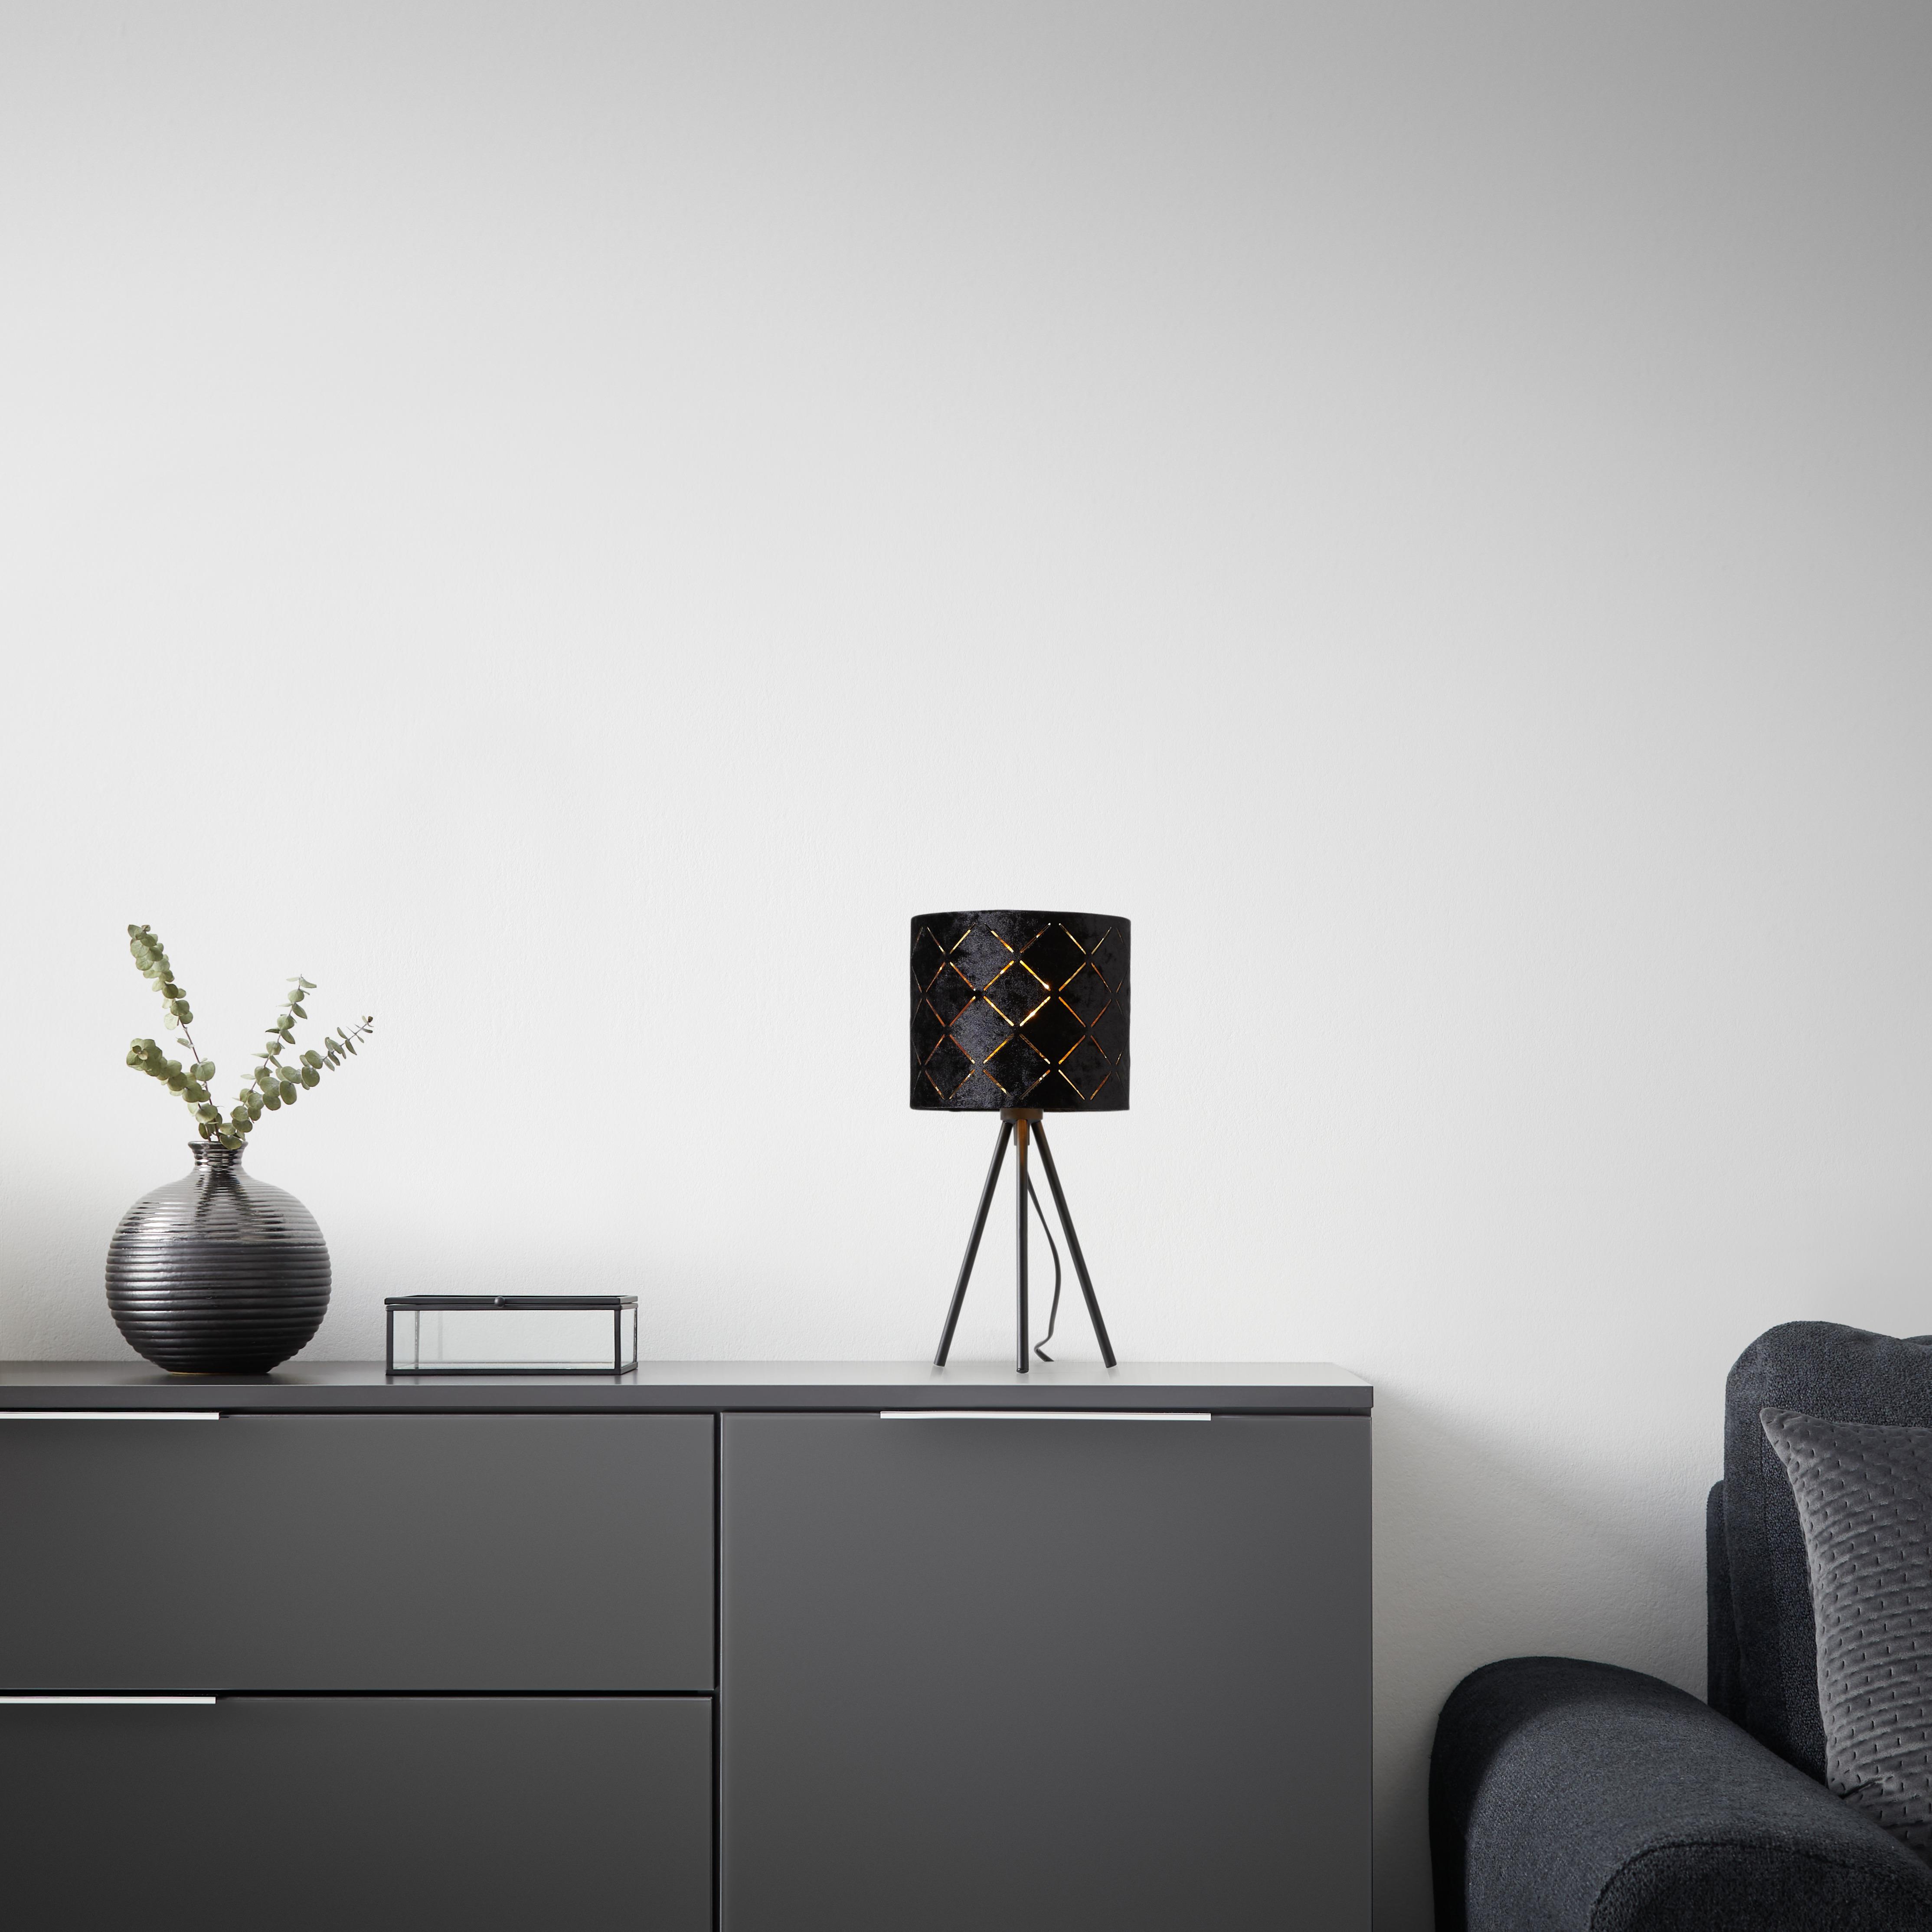 Lampa stołowa EVELYN czarny/złoty, ok. 17x35 cm - czarny, Lifestyle, metal (17/35cm) - Modern Living